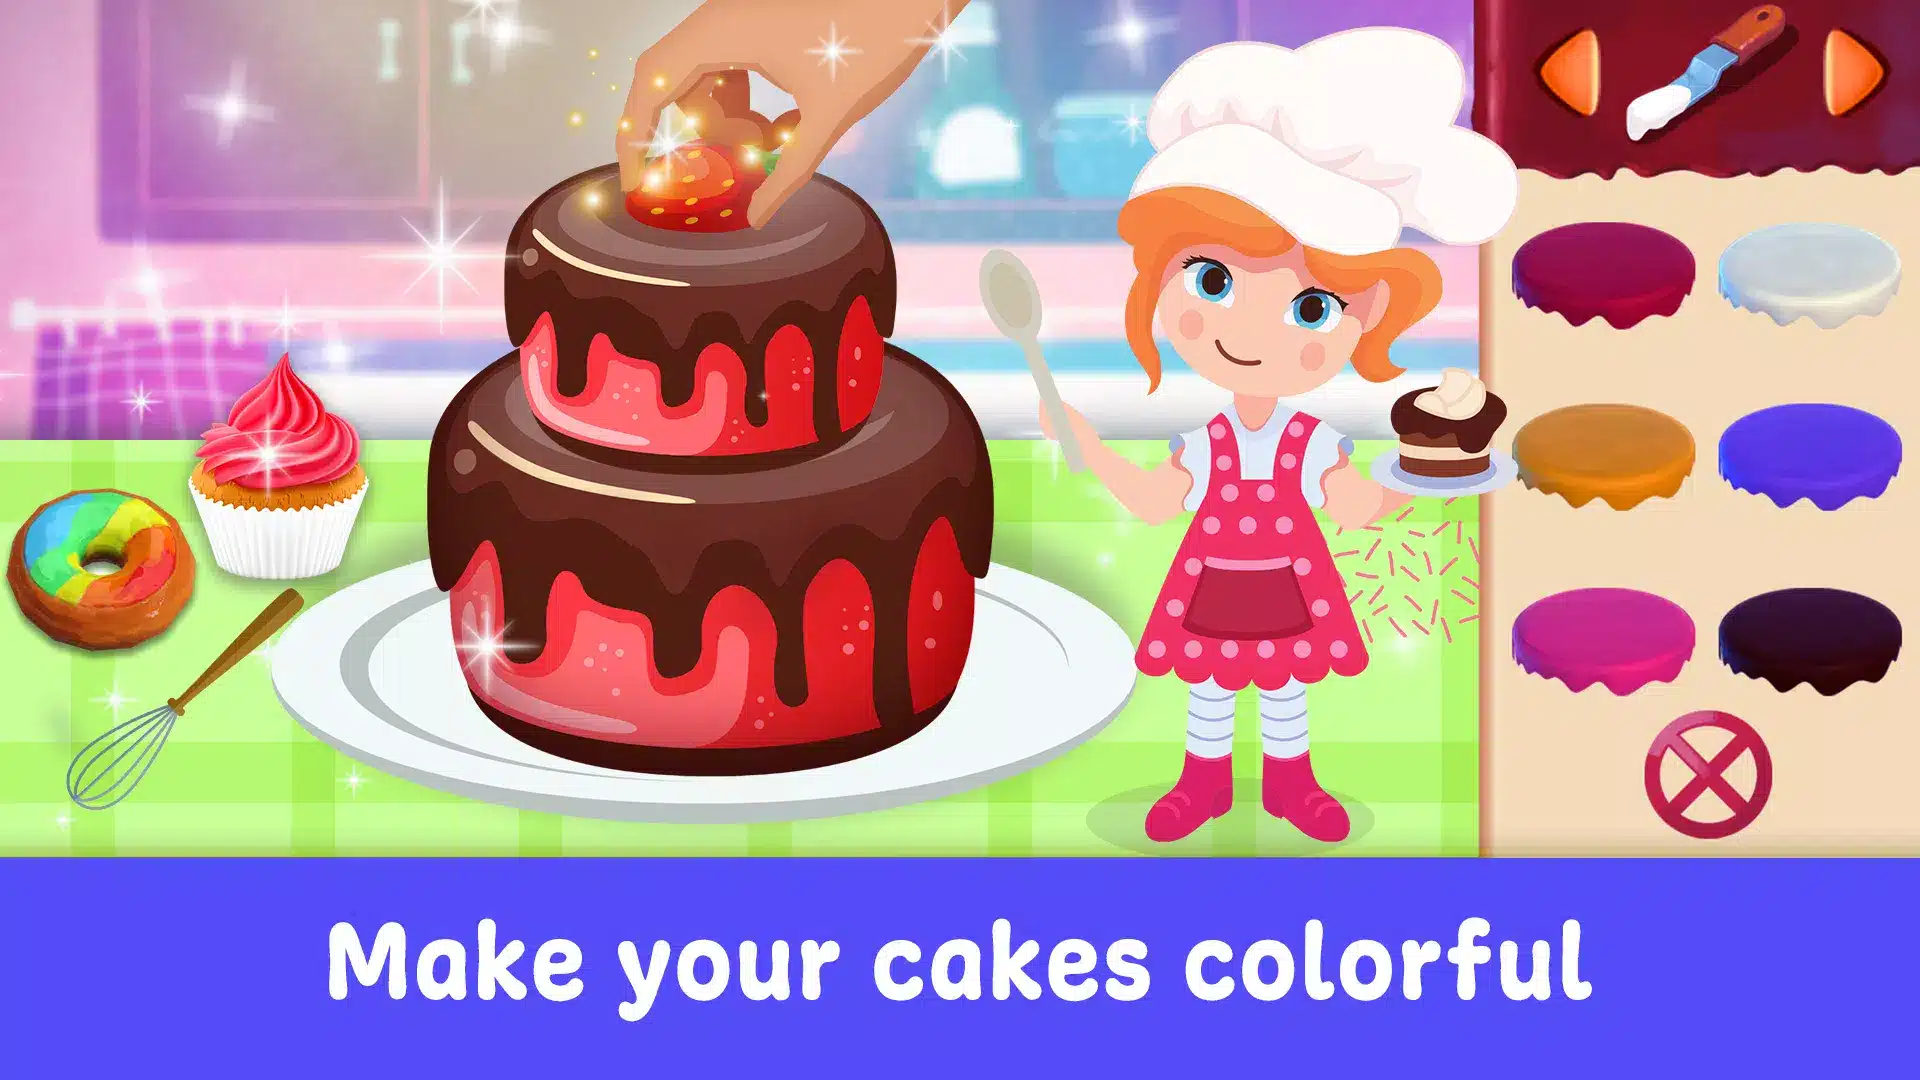 Cake Maker Games for Girls Image 5